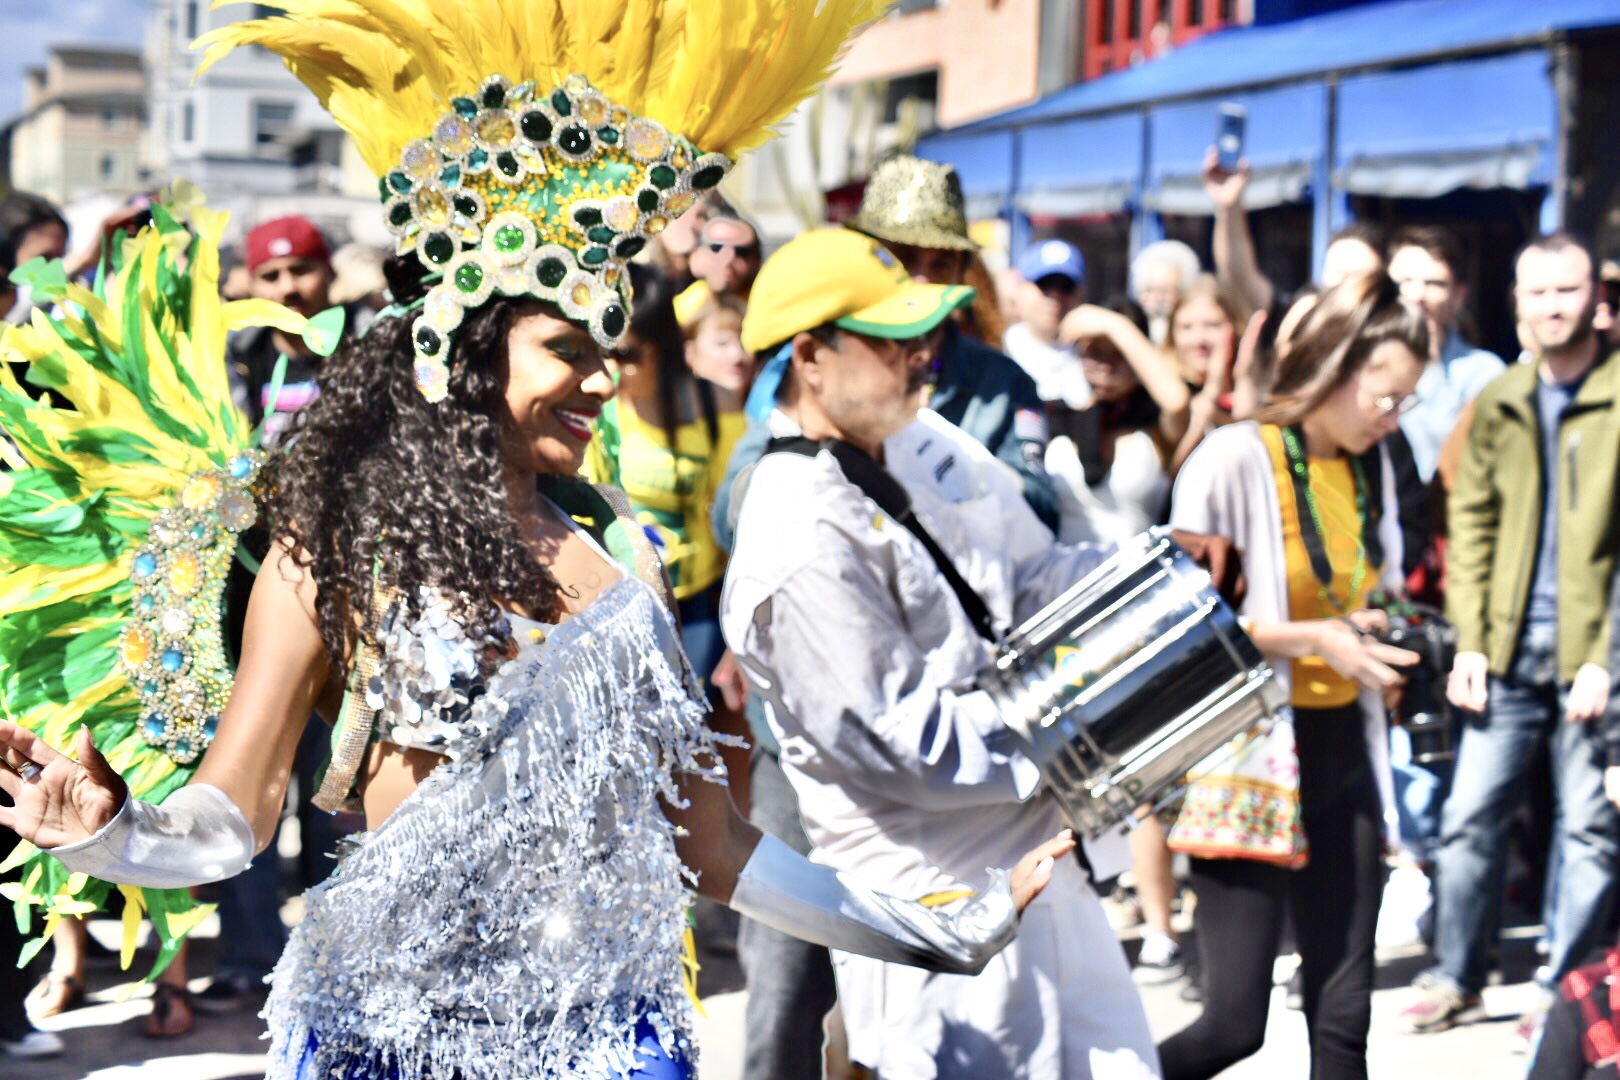 Bloco de rua em Venice celebra cultura brasileira com alegria contagiante (Foto: Claudia Passos)